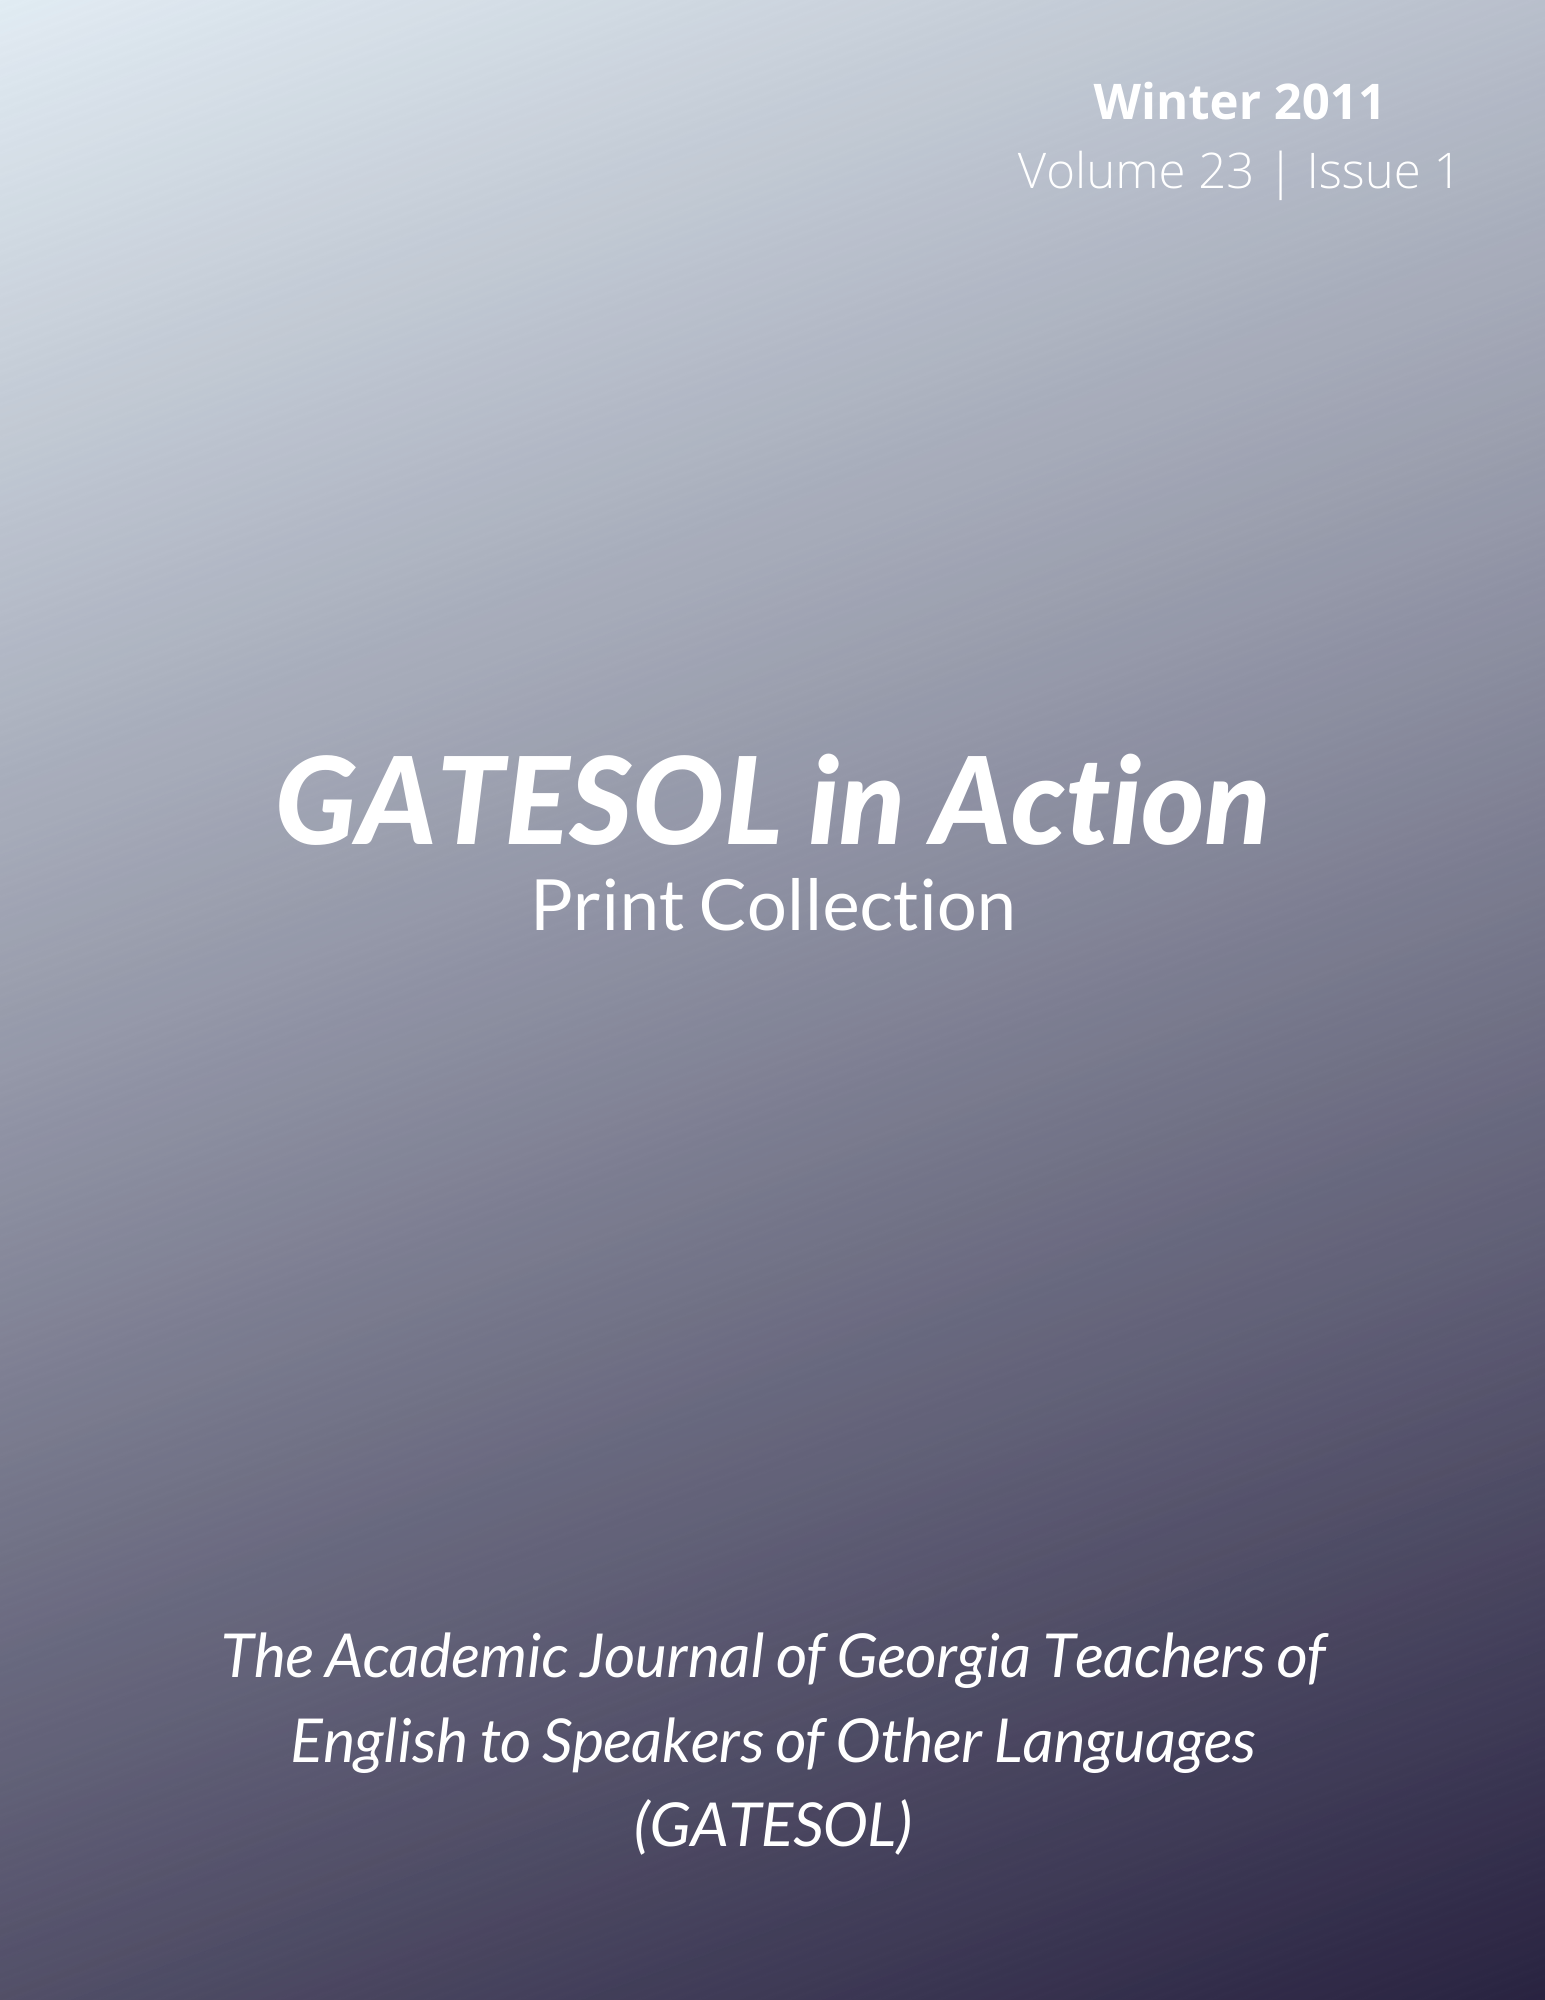 GATESOL in Action (Winter 2011, Volume 23, Issue 1)